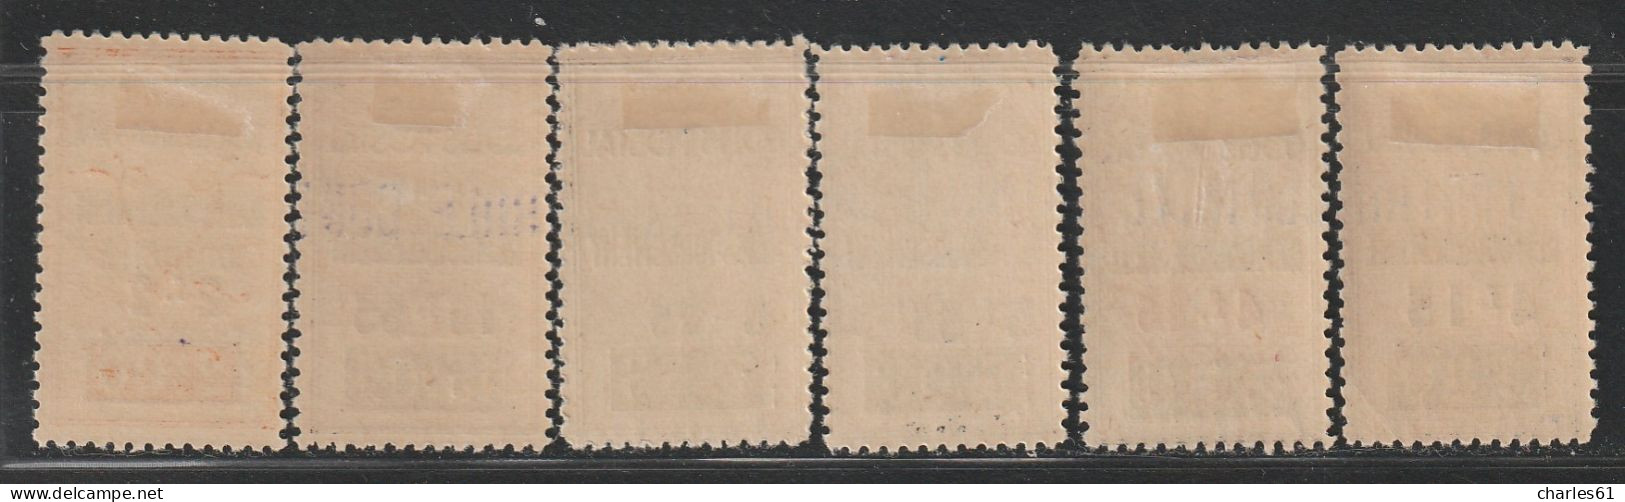 ALGERIE - COLIS POSTAUX - N°77+77a+78+79+81+82 * (1941) 6 Valeurs - Postpaketten